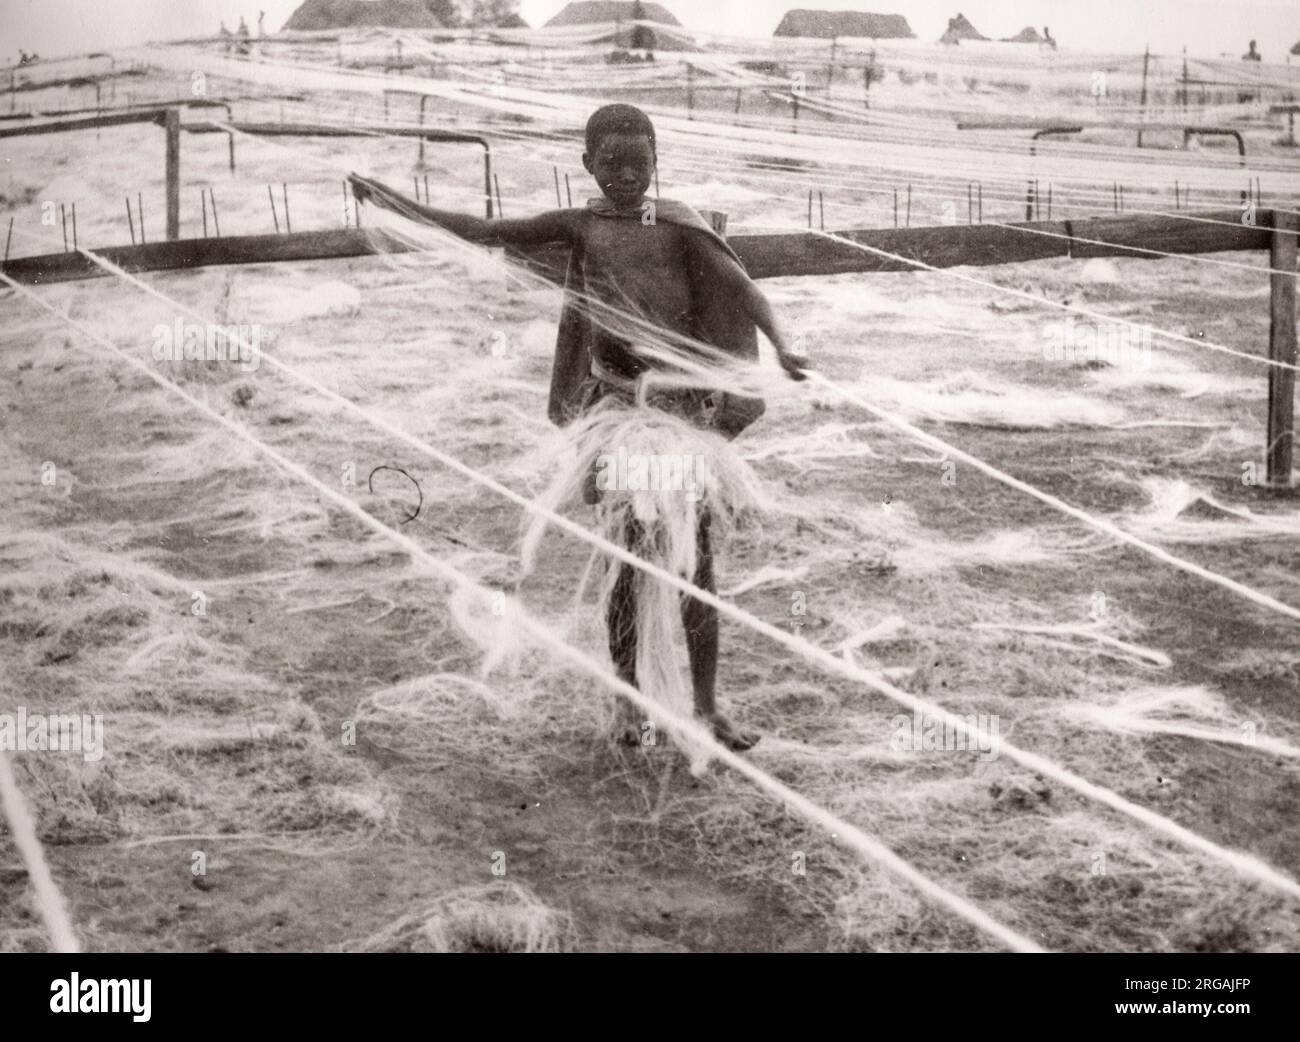 1940s Ostafrika - verarbeitende Industrie - Sisal, Kenia fotografieren von einem britischen Armeeanwärter, der während des Zweiten Weltkriegs in Ostafrika und dem Nahen Osten stationiert war Stockfoto